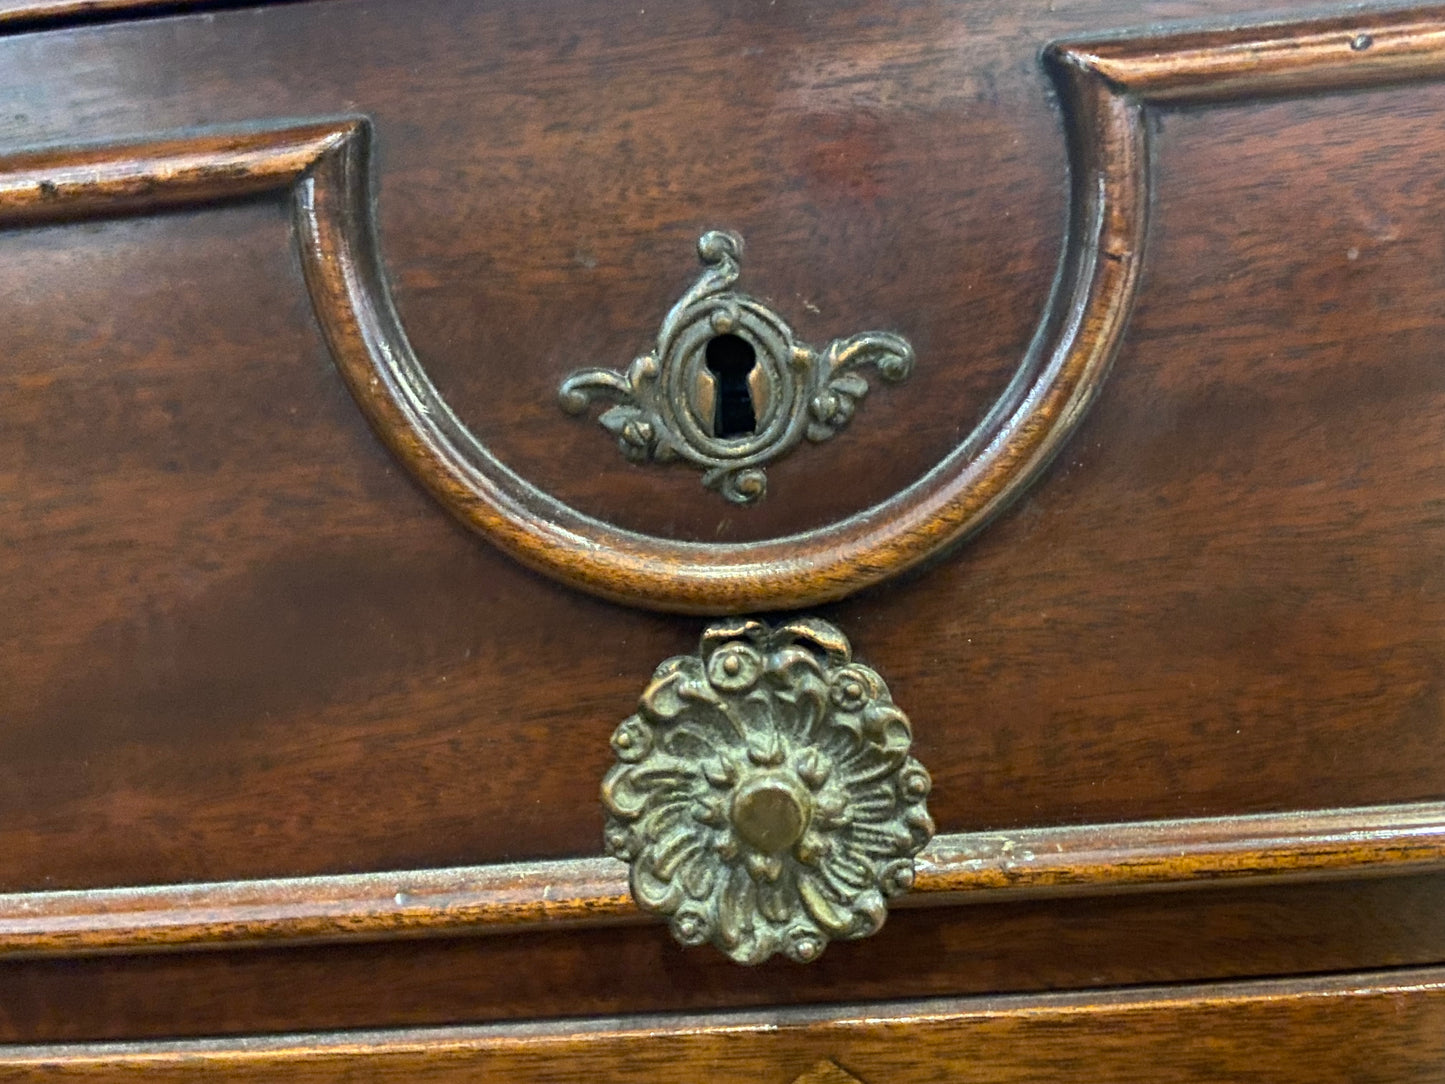 Antique Dresser with Mirror